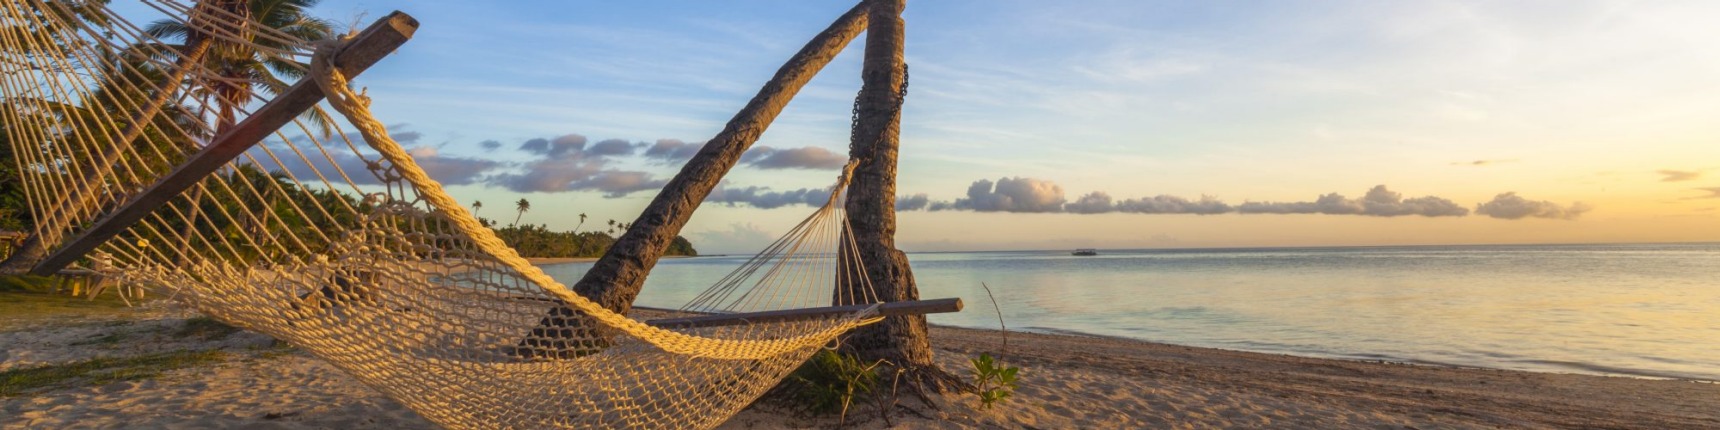 Fiji, hammock, beach